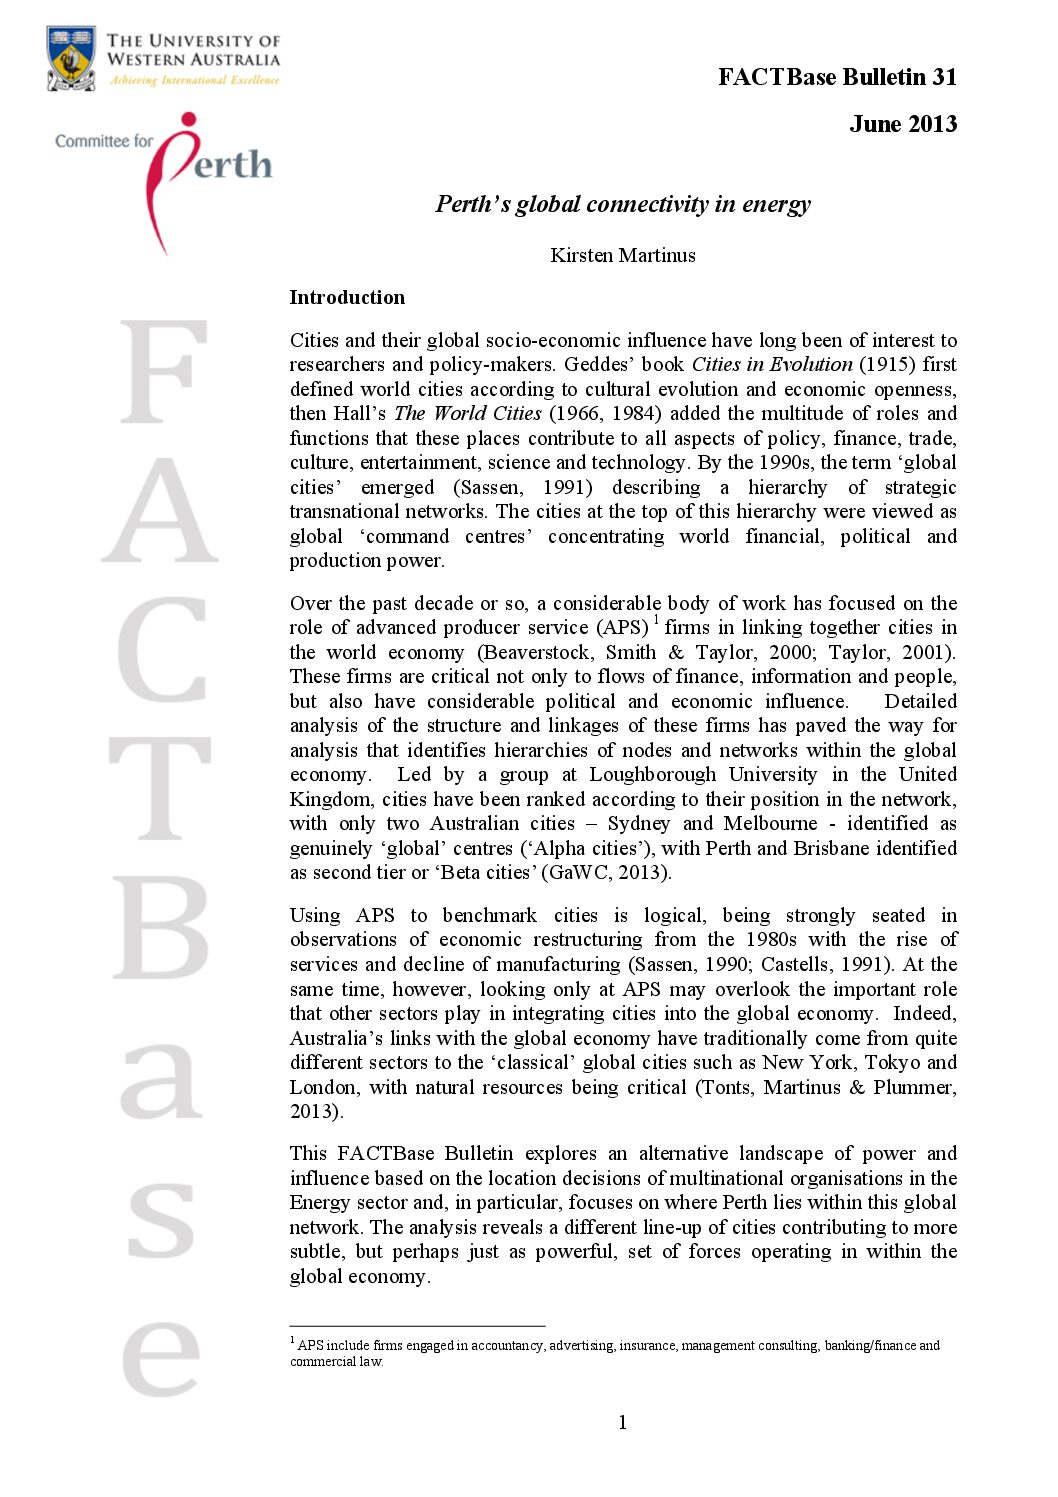 FACTBase Bulletin 31 - June 2013